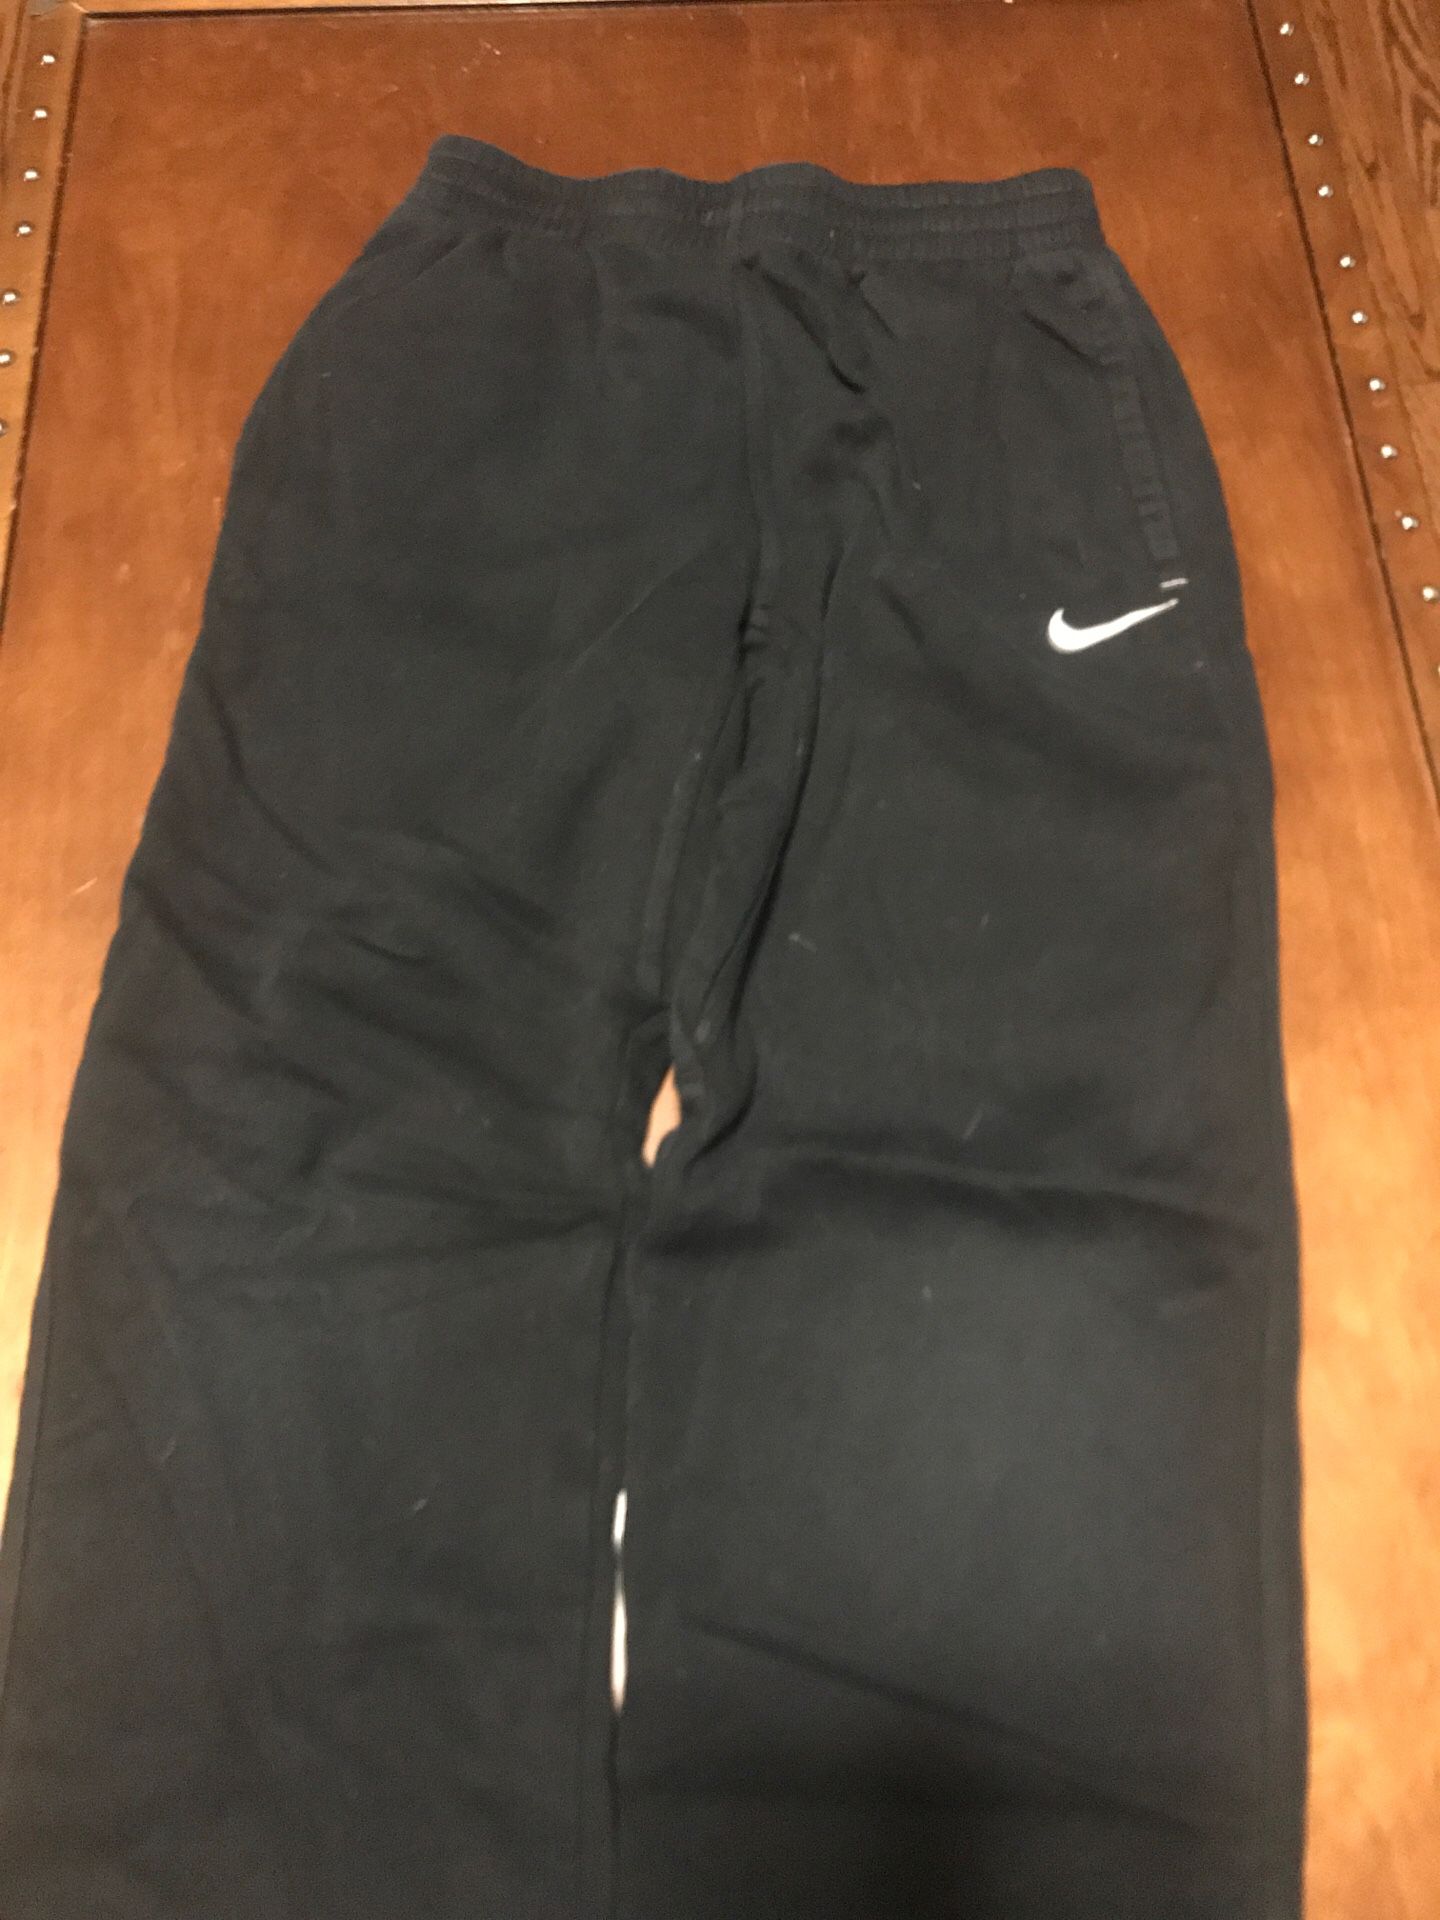 Boy’s size L Nike black sweatpants